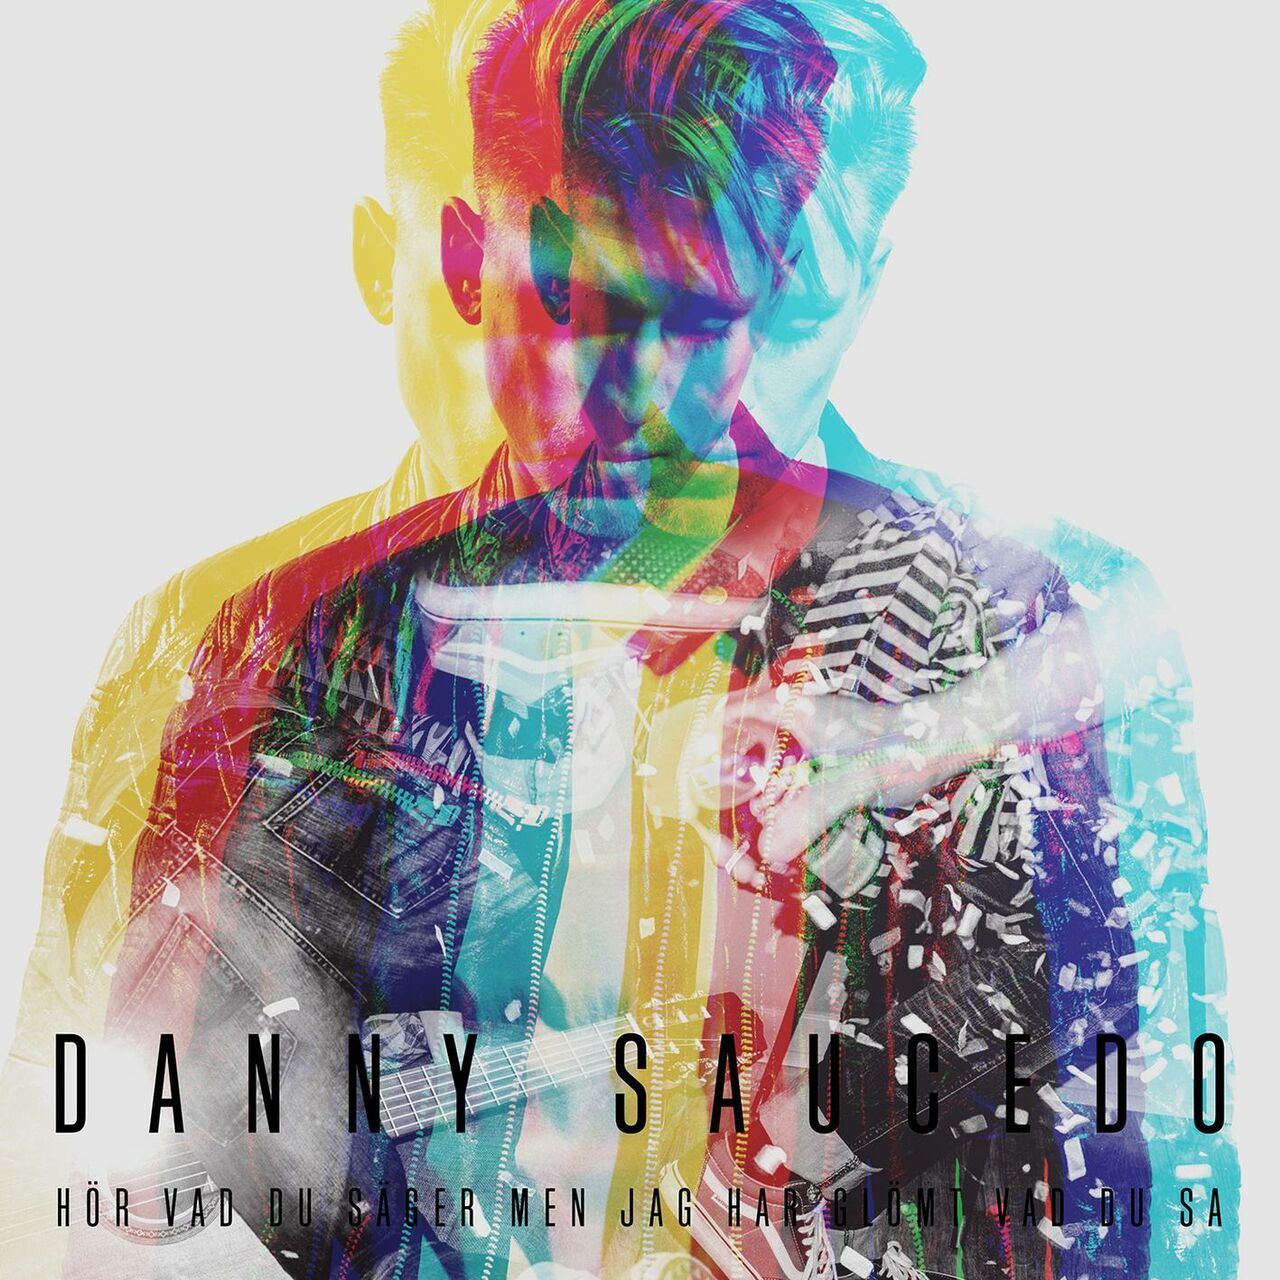 Danny Saucedo — Hör vad du säger men jag har glömt vad du sa cover artwork